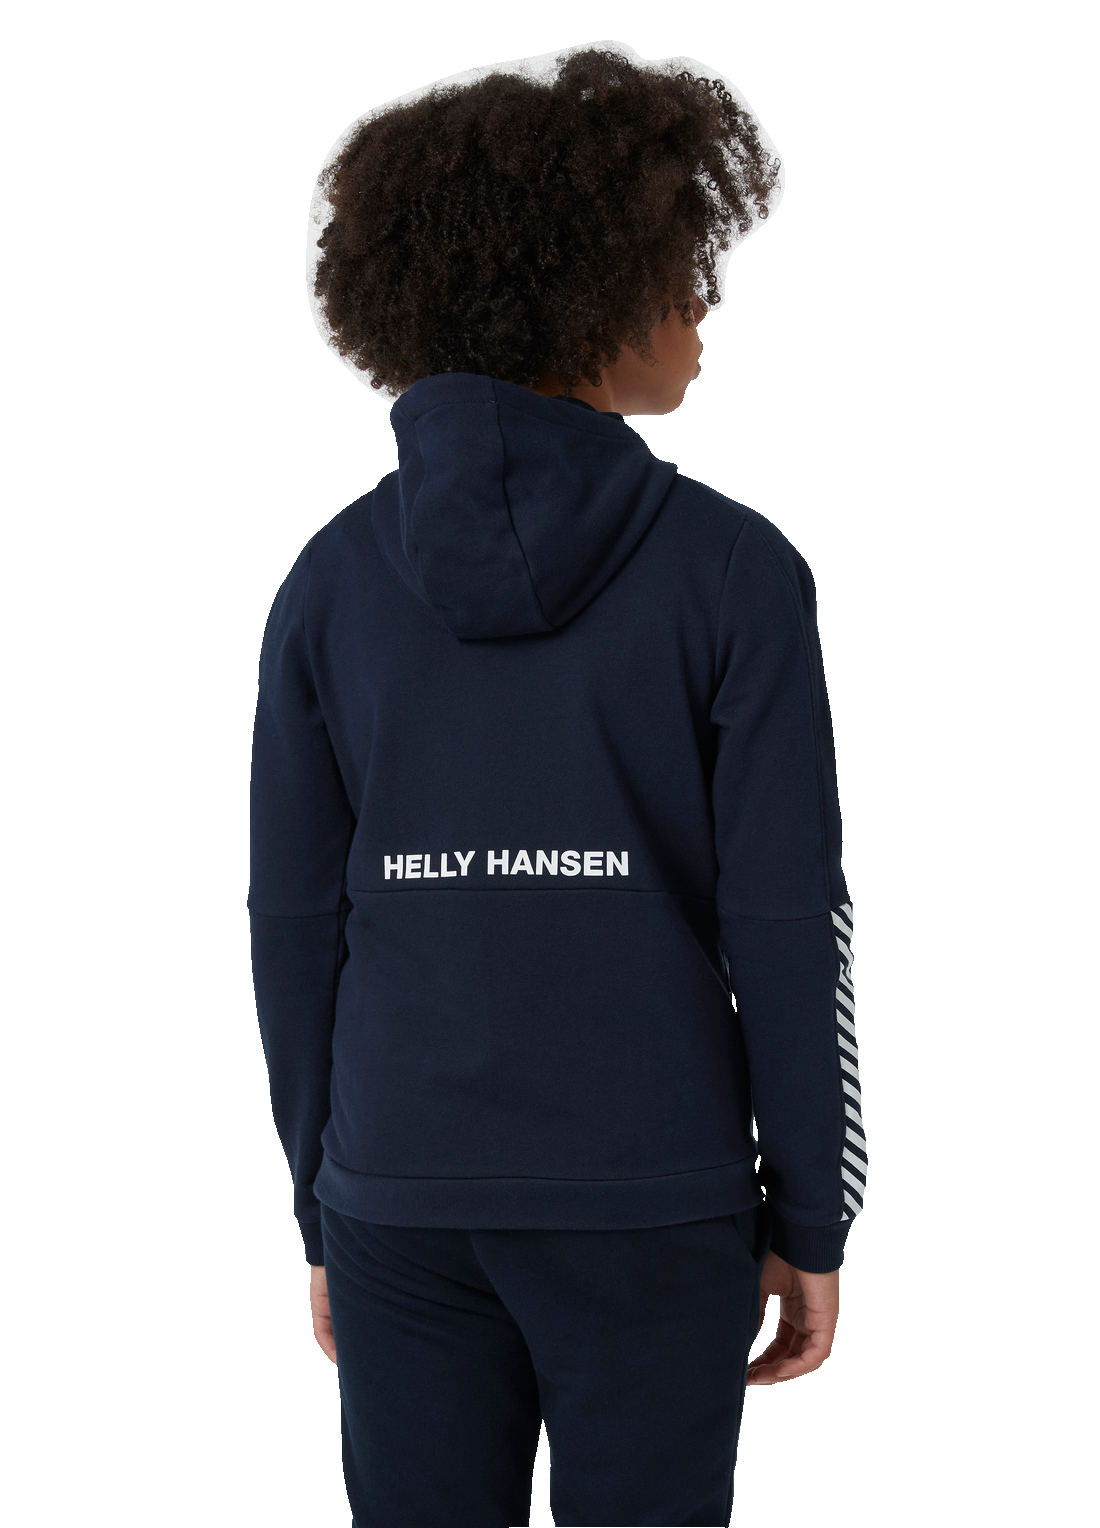 Helly Hansen Junior Active Hoodie tummansininen huppari värissä Navy takaa kuvattuna pojan päällä